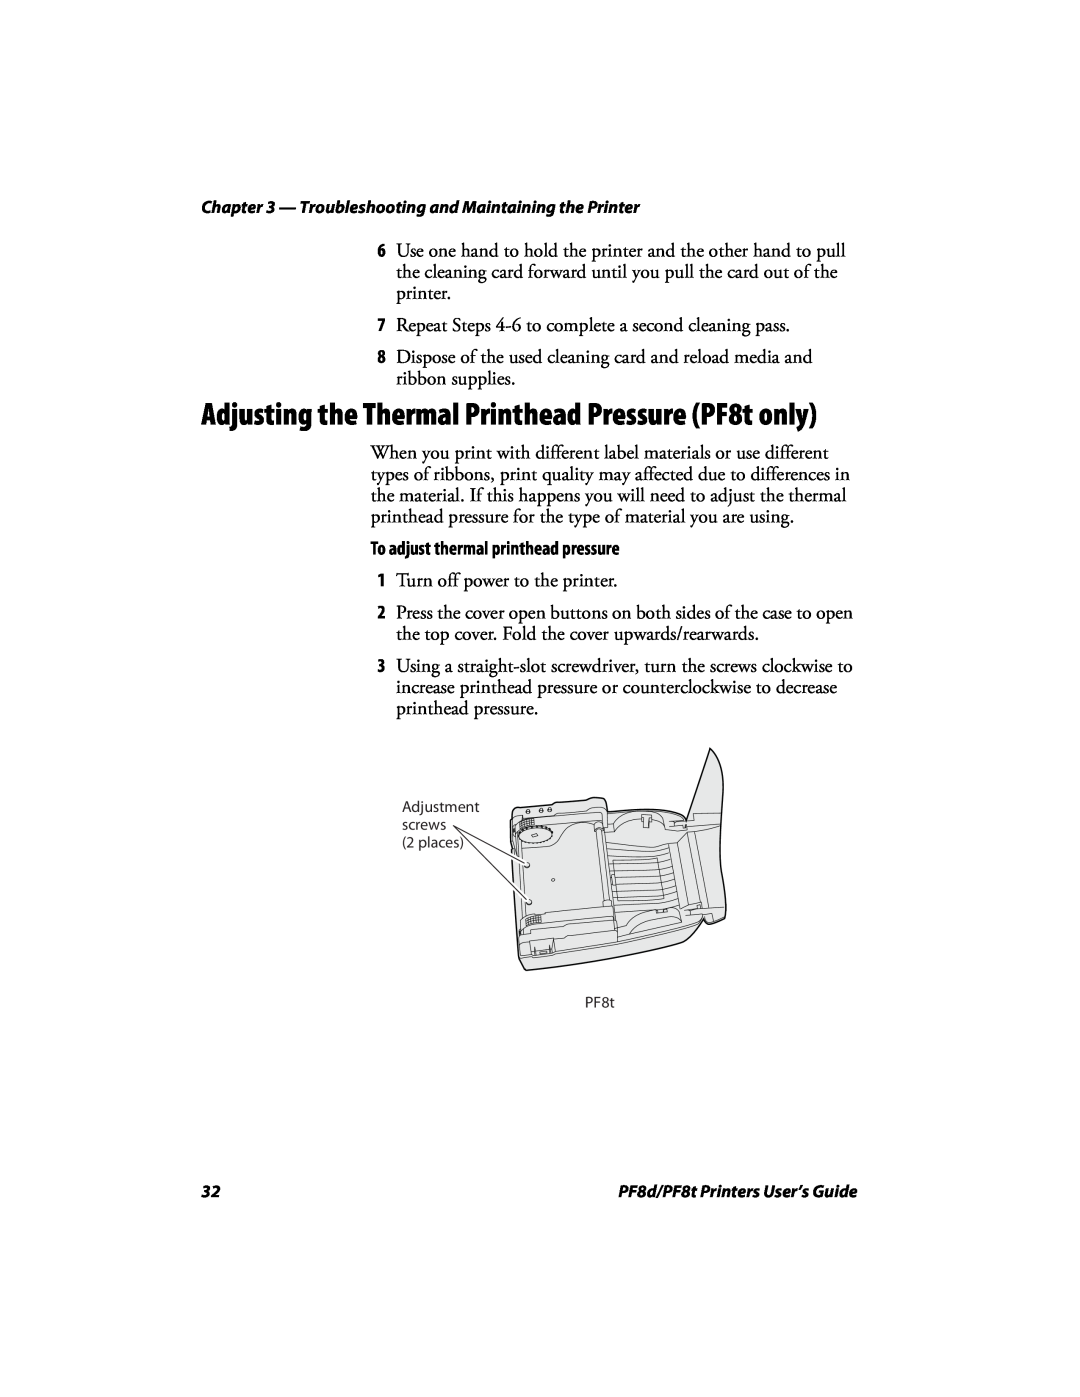 Intermec PF8D, PF8T manual Adjusting the Thermal Printhead Pressure PF8t only, To adjust thermal printhead pressure 